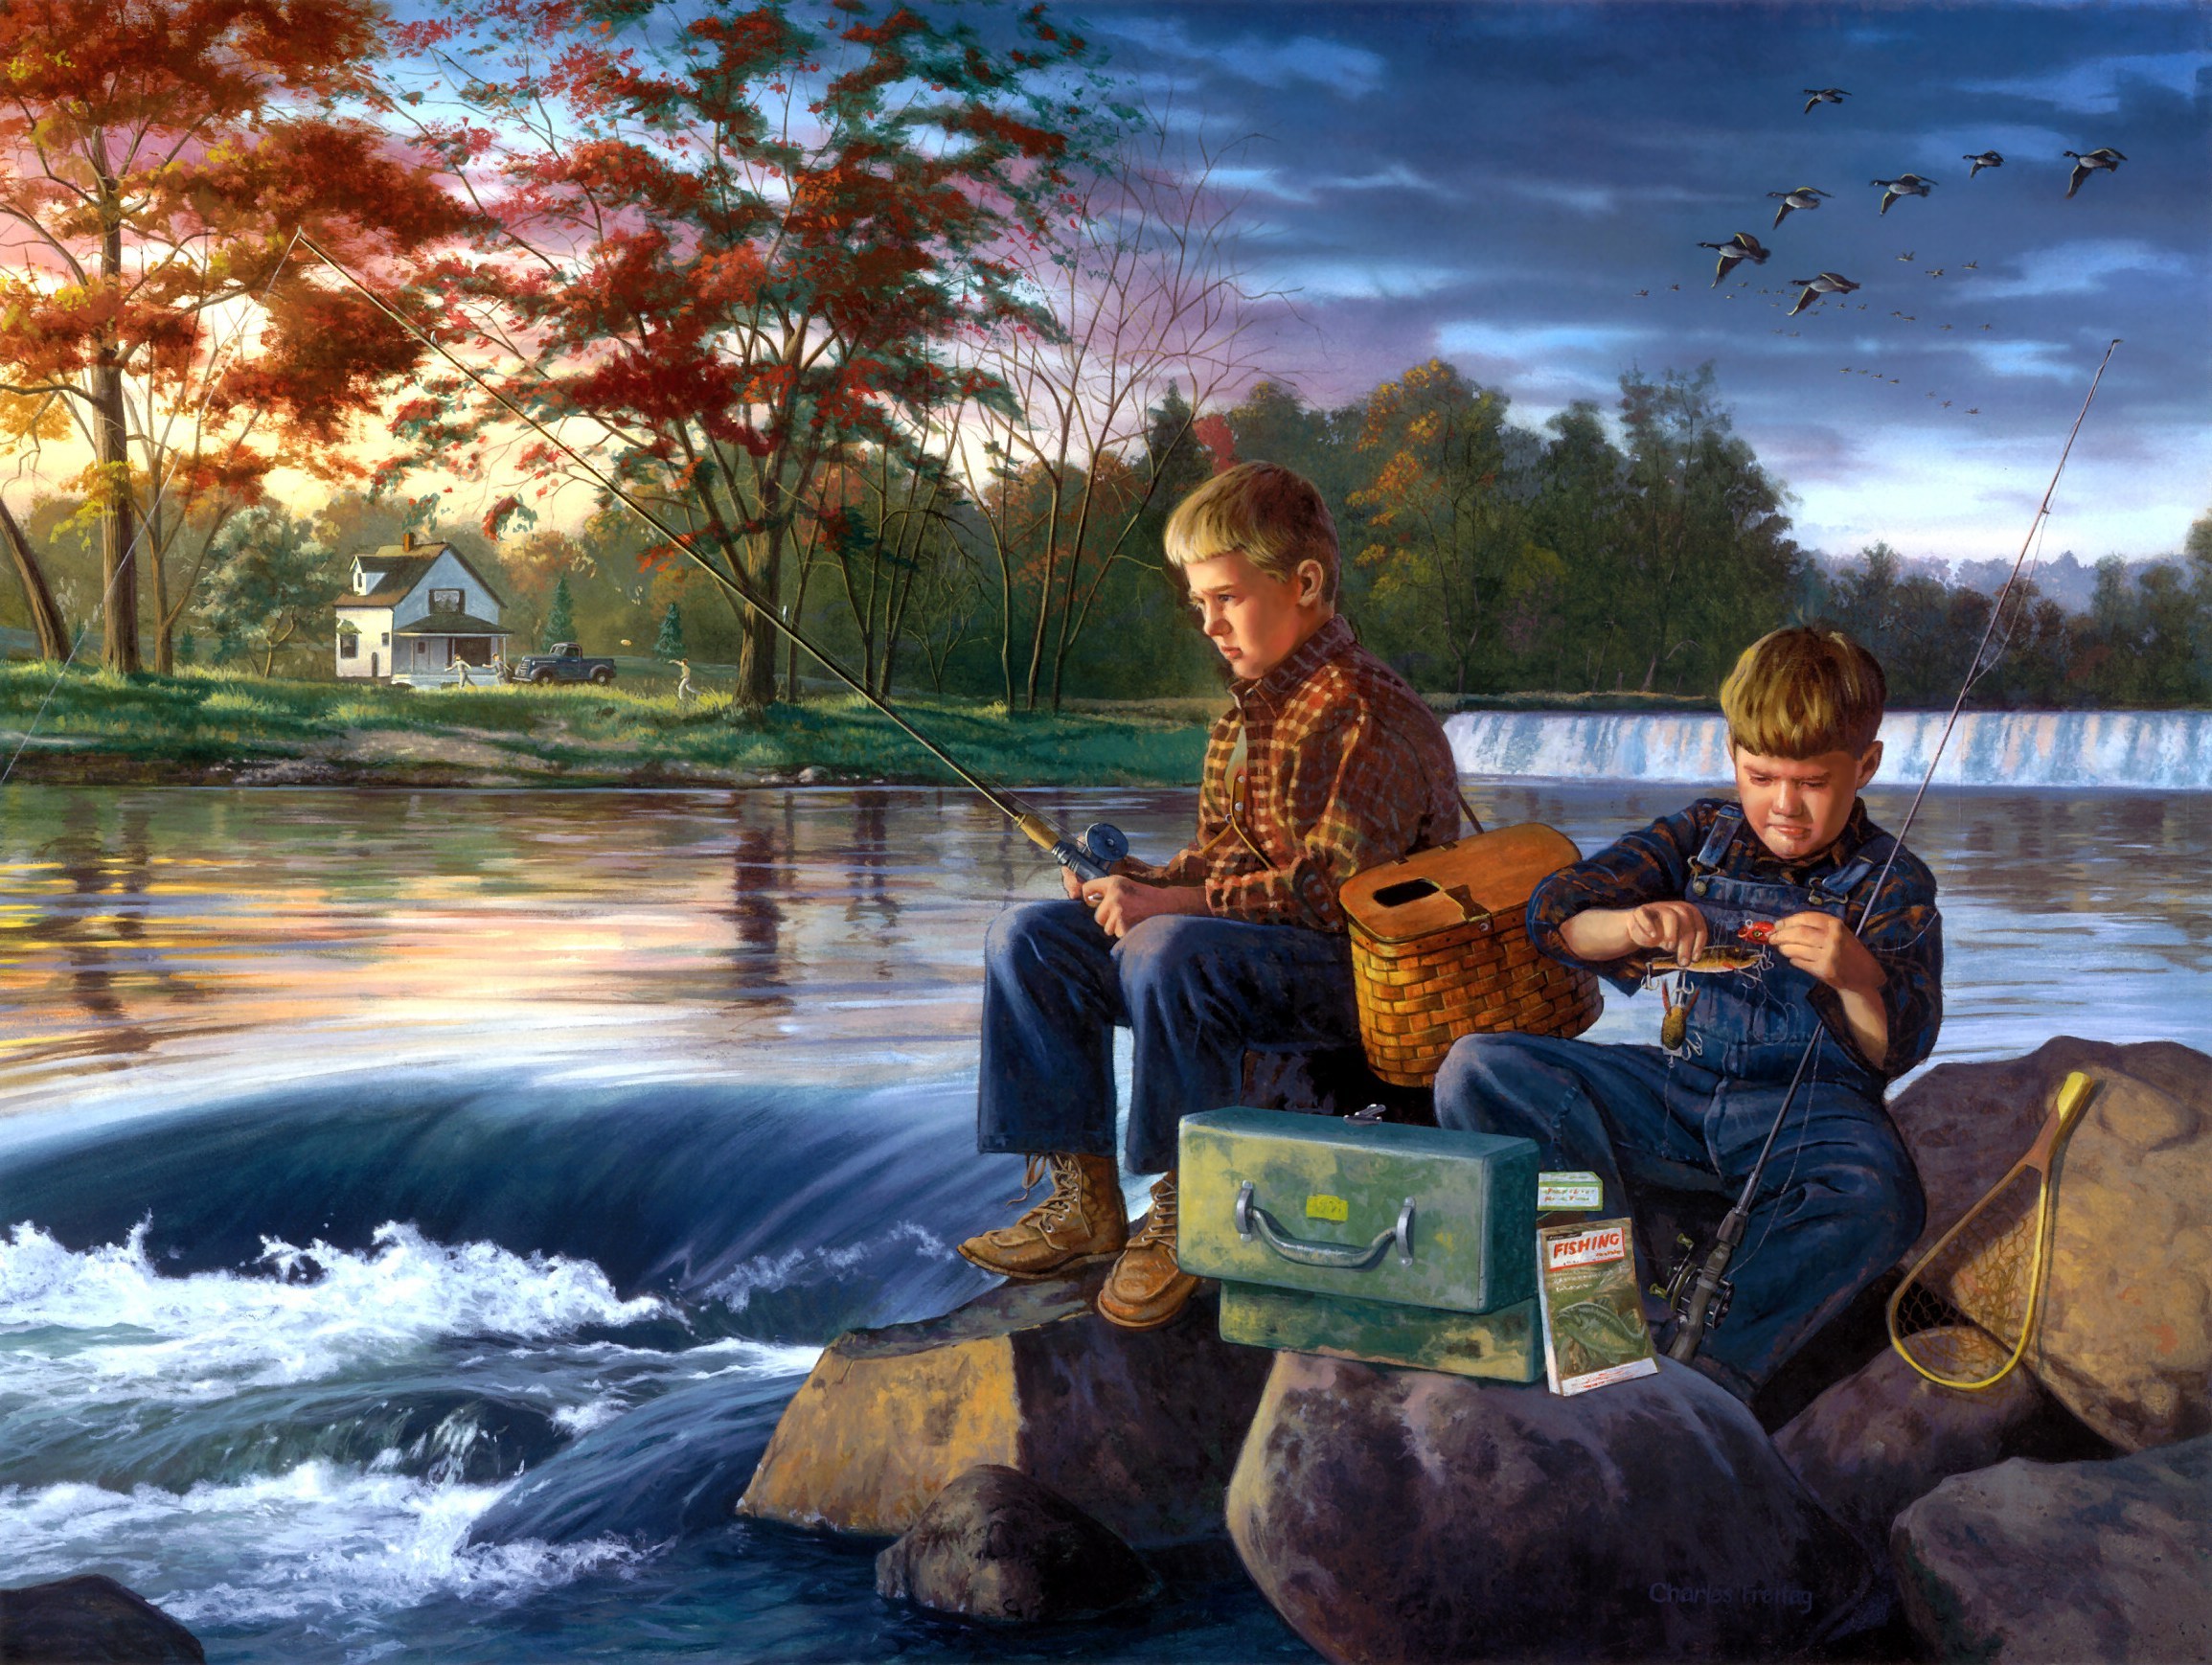 Братья ловят рыбу. Дети на берегу речки. Рыбалка пейзаж. Сюжетная живопись картины. Человек с удочкой картина.